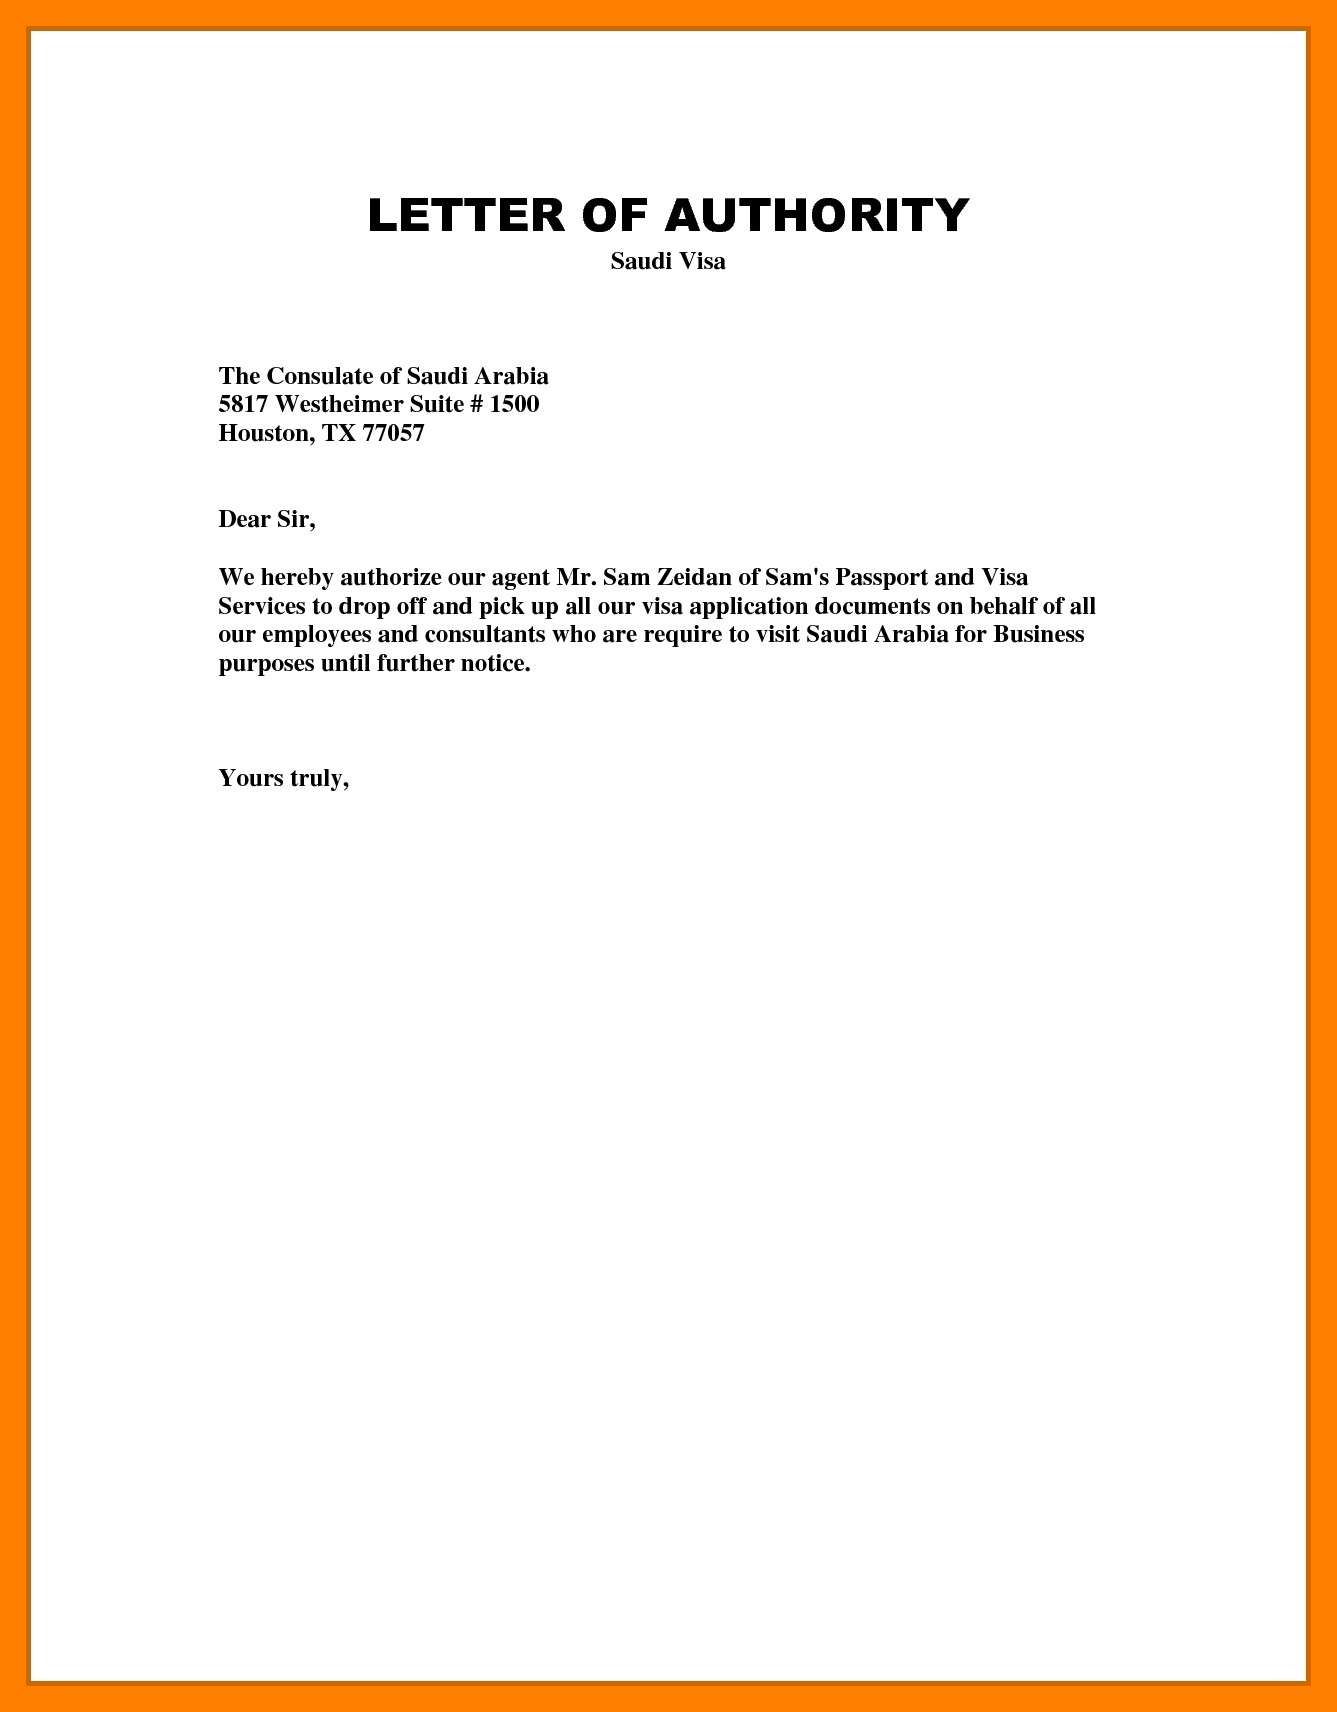 Authorization Letter Part 2 15660 Hot Sex Picture 7065